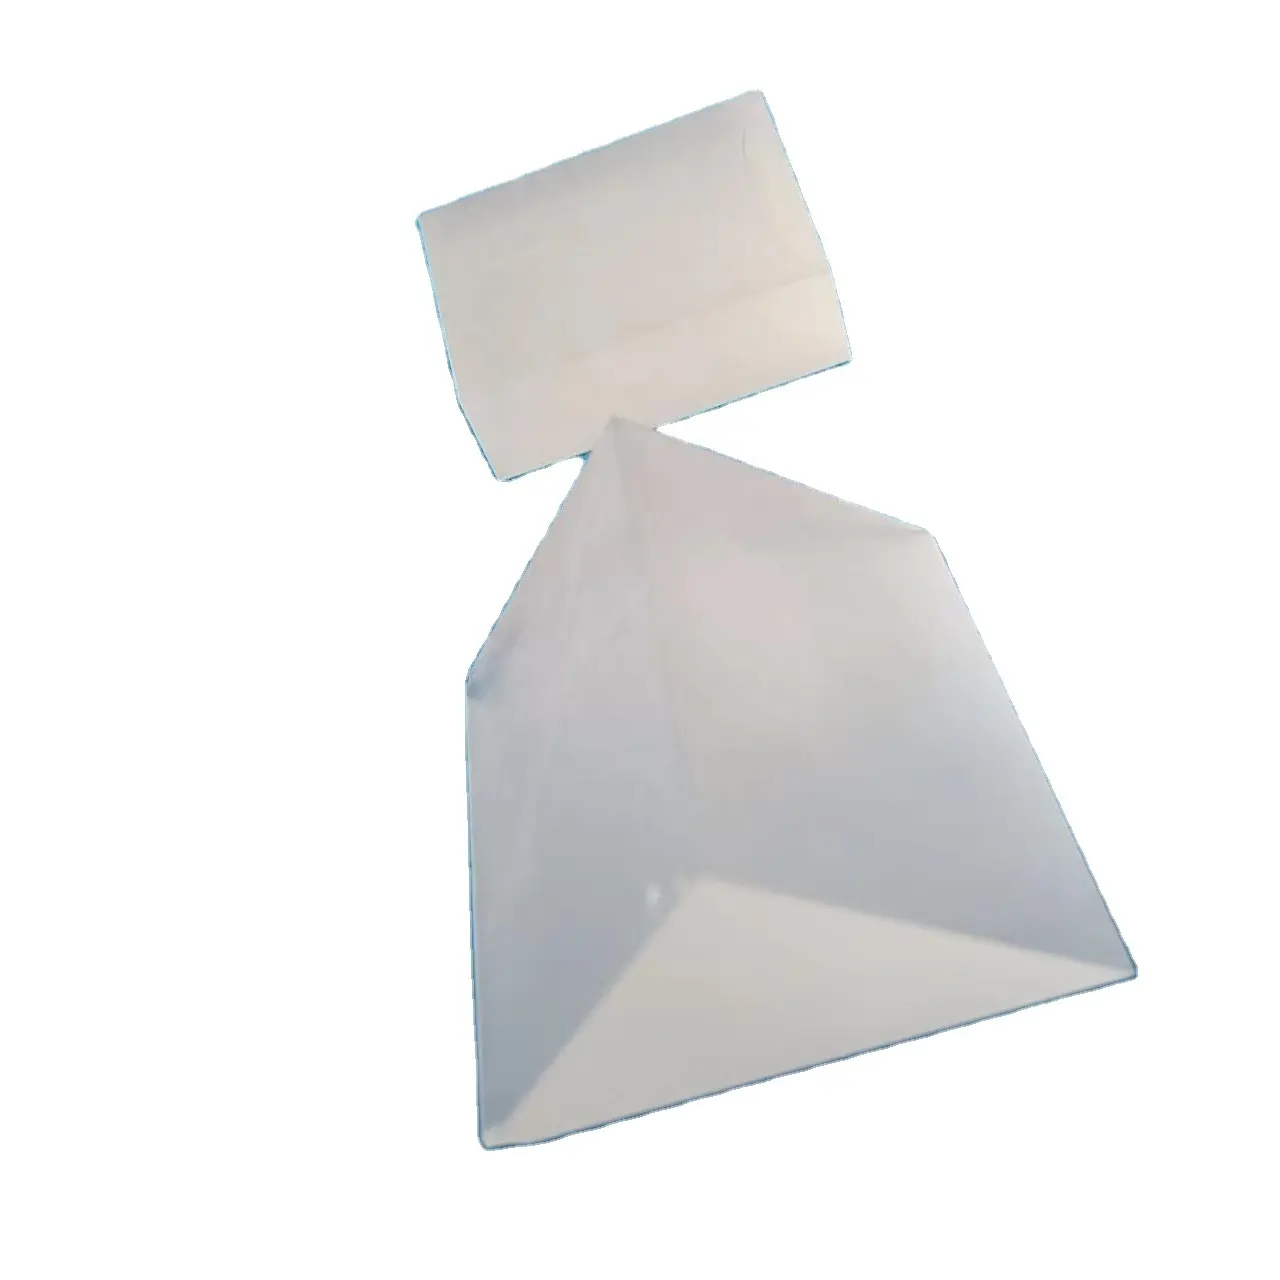 Prisma vetro ottico substrato bianco vetro ottico grezzo embrione K9 BK7 lente ottica vetro bianco personalizzazione produttore